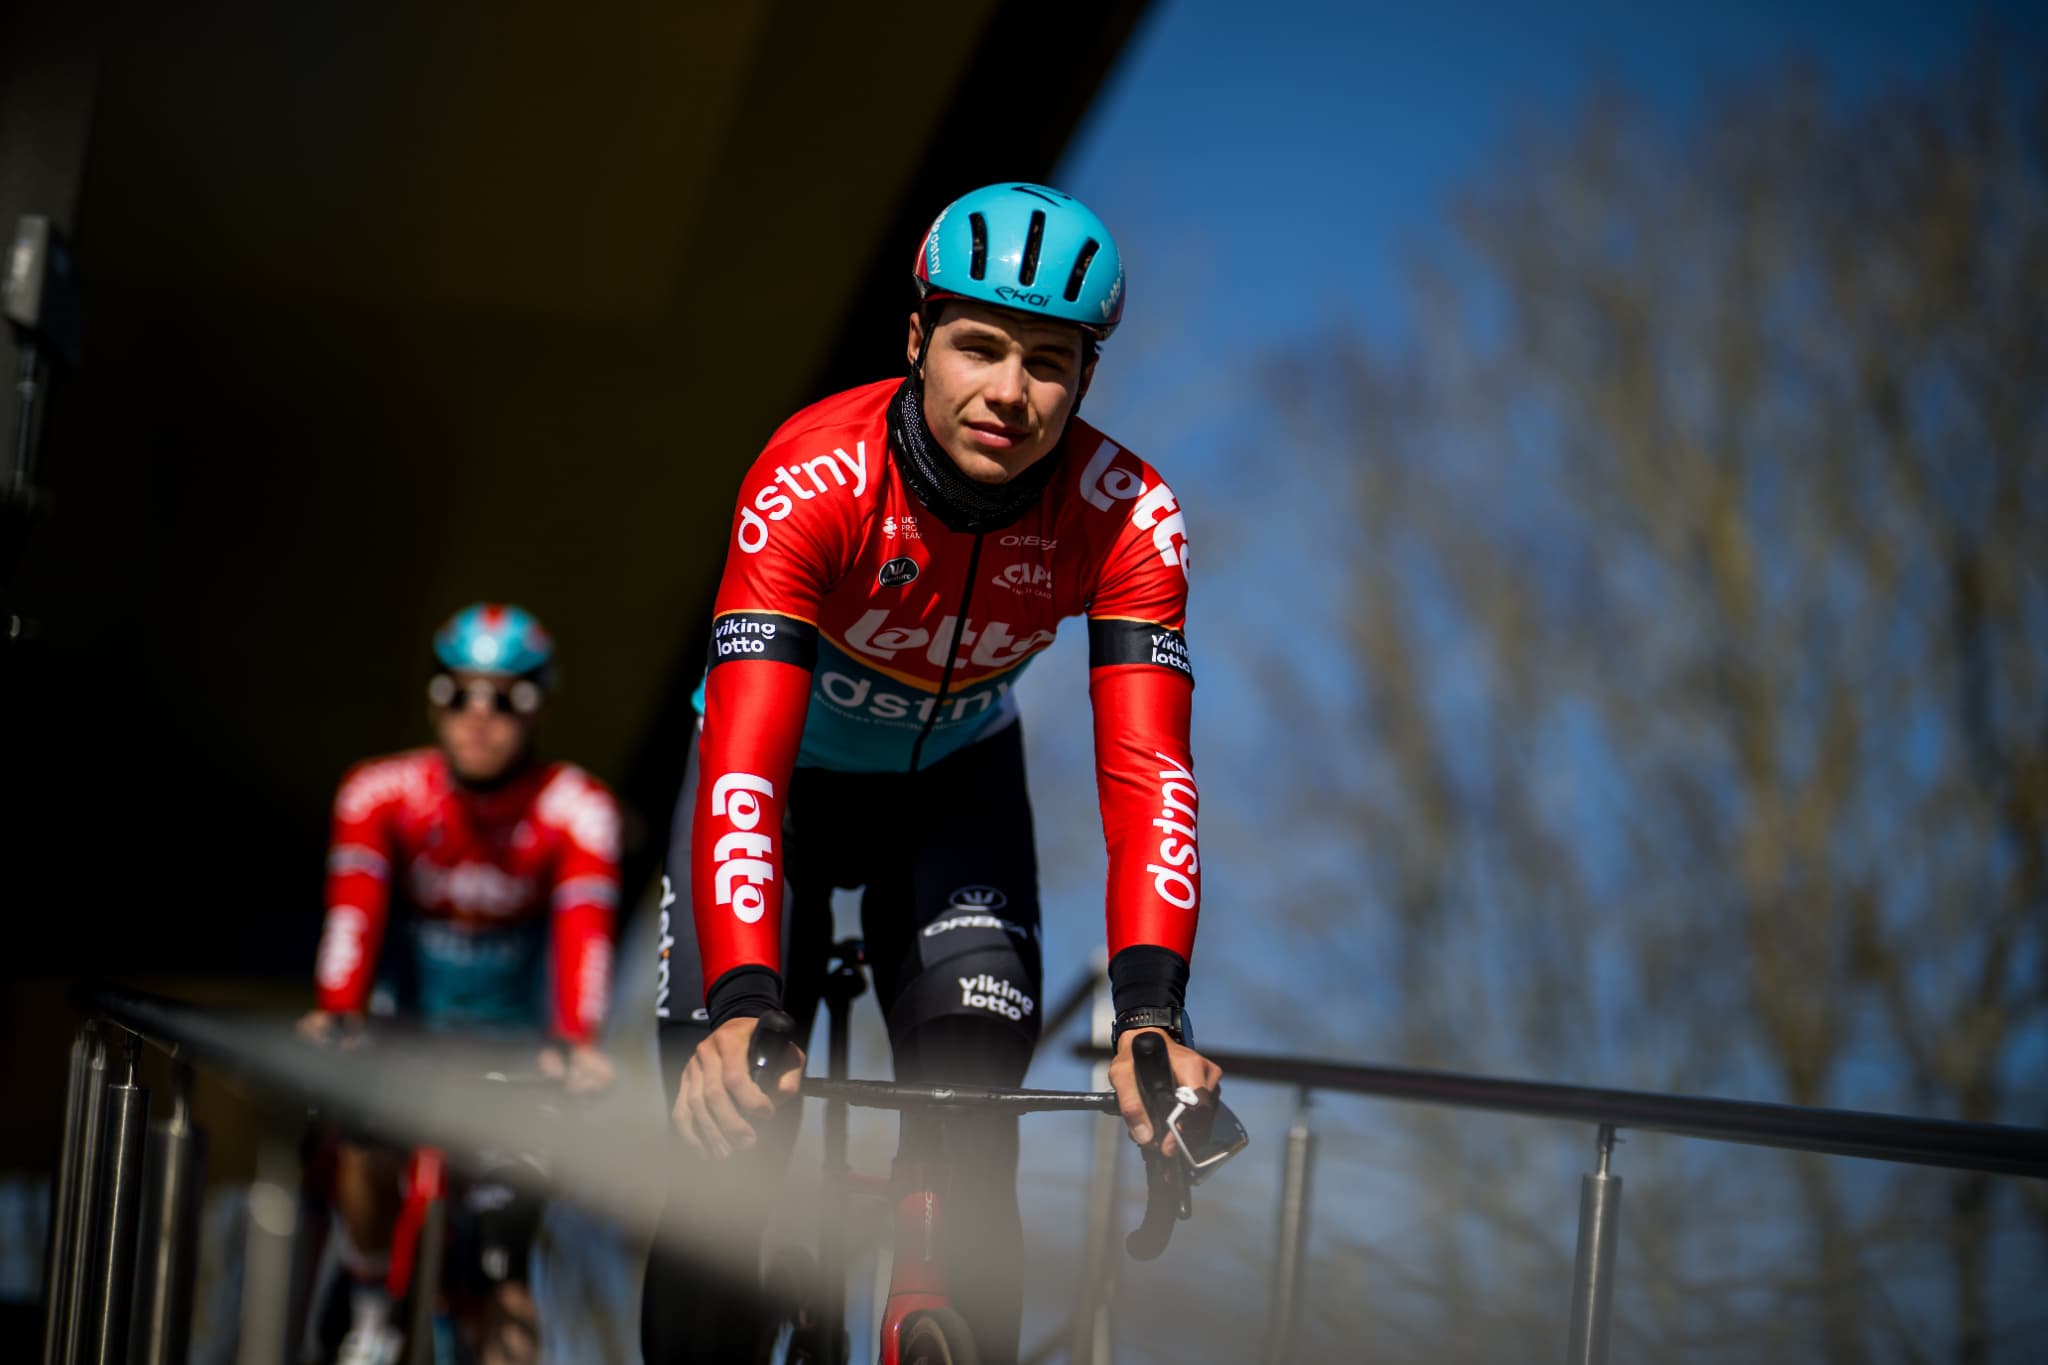 cyclisme: le sprinteur belge arnaud de lie atteint de la maladie de lyme